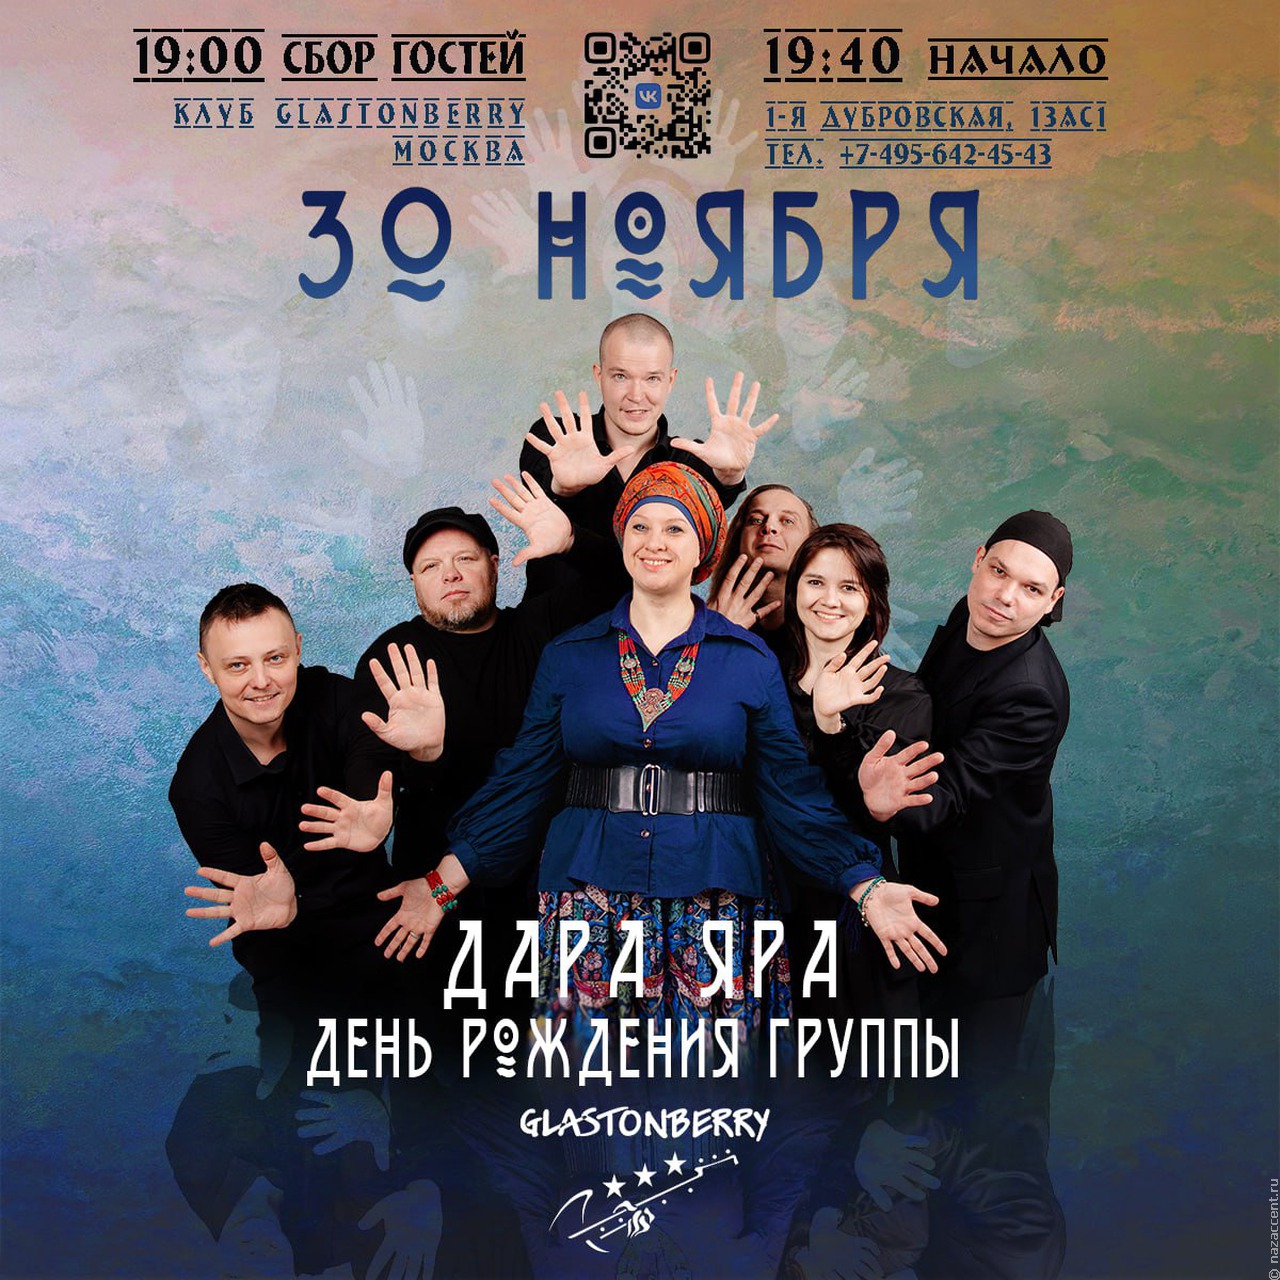 Концерт финалиста проекта "Звук Евразии" пройдет в Москве